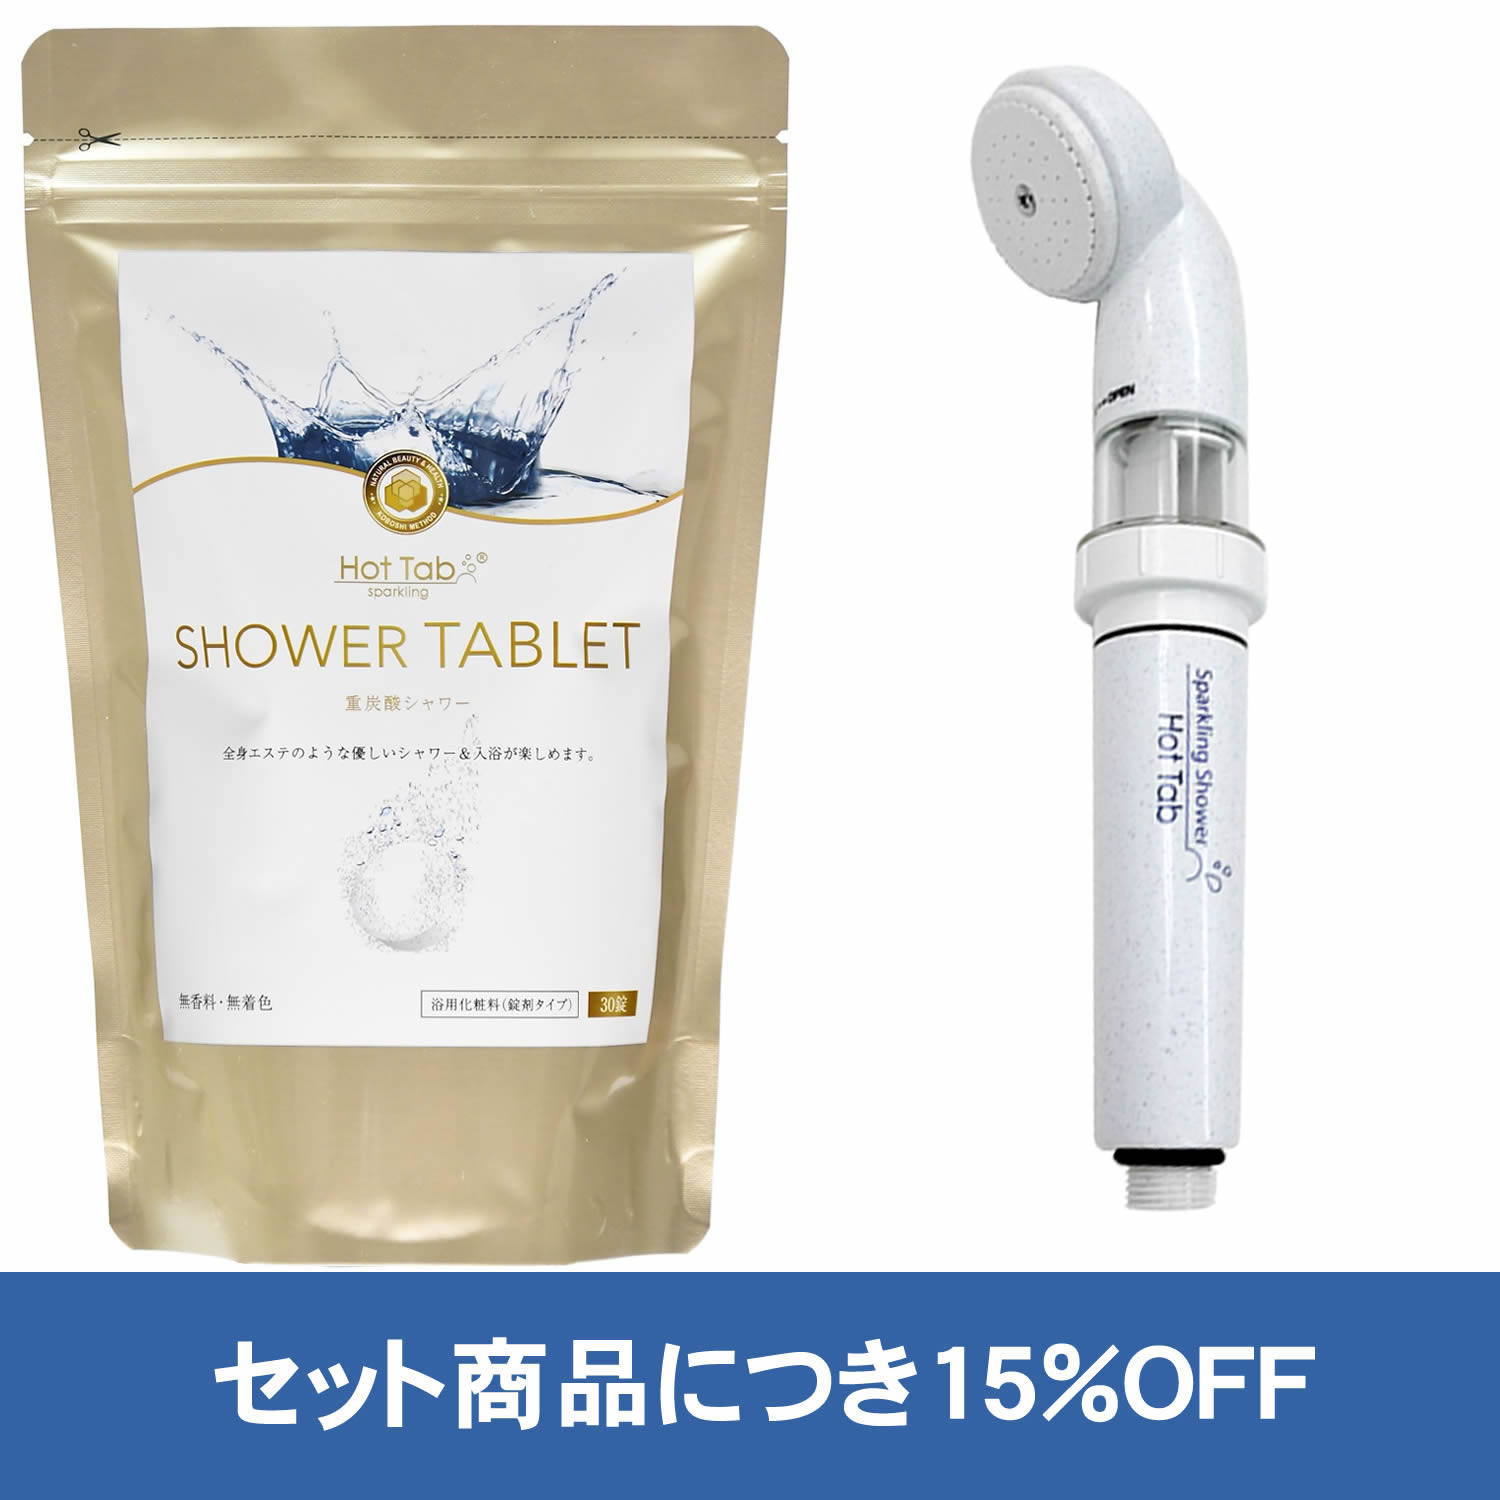 【公式】ホットタブ シャワータブレット SHOWER TABLET 30錠 重炭酸シャワー [浴用化粧料] ＋ 重炭酸Bioスパークリン…